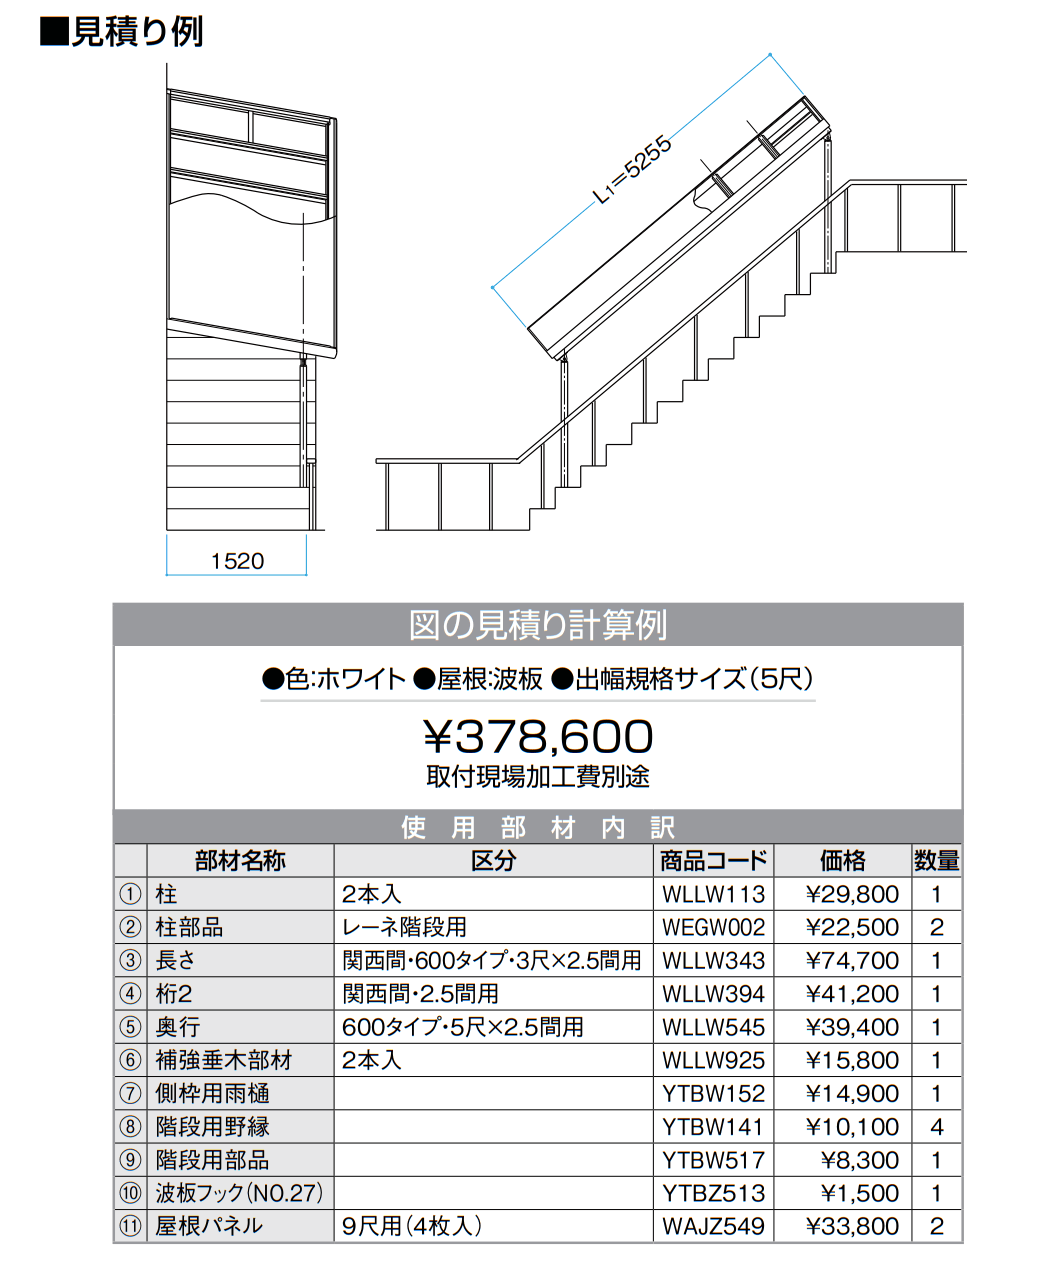 ナーラ階段用屋根【2022年版】_価格_1